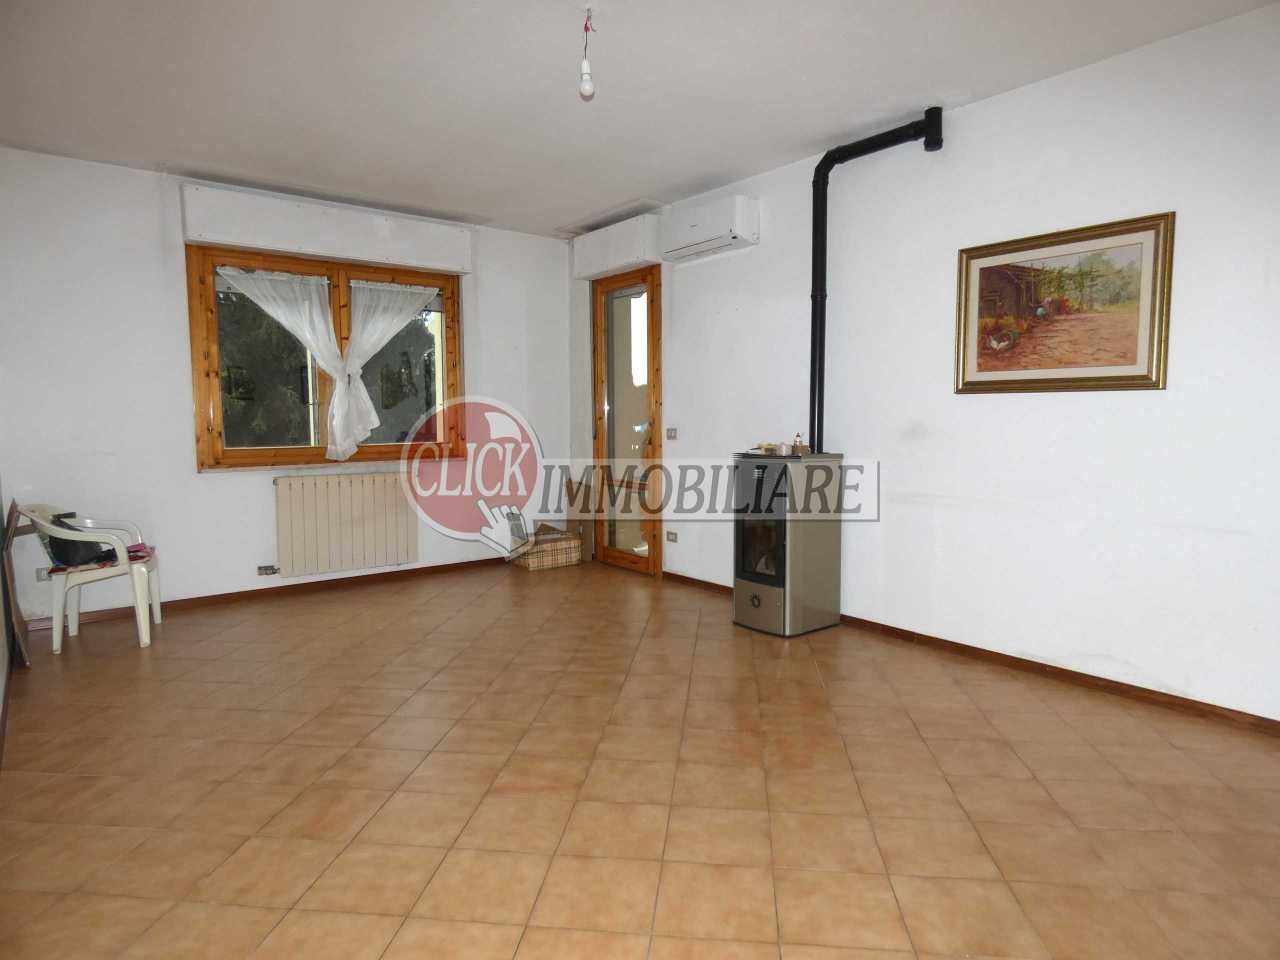 Appartamento in vendita a Borgo San Lorenzo, 4 locali, prezzo € 220.000 | PortaleAgenzieImmobiliari.it